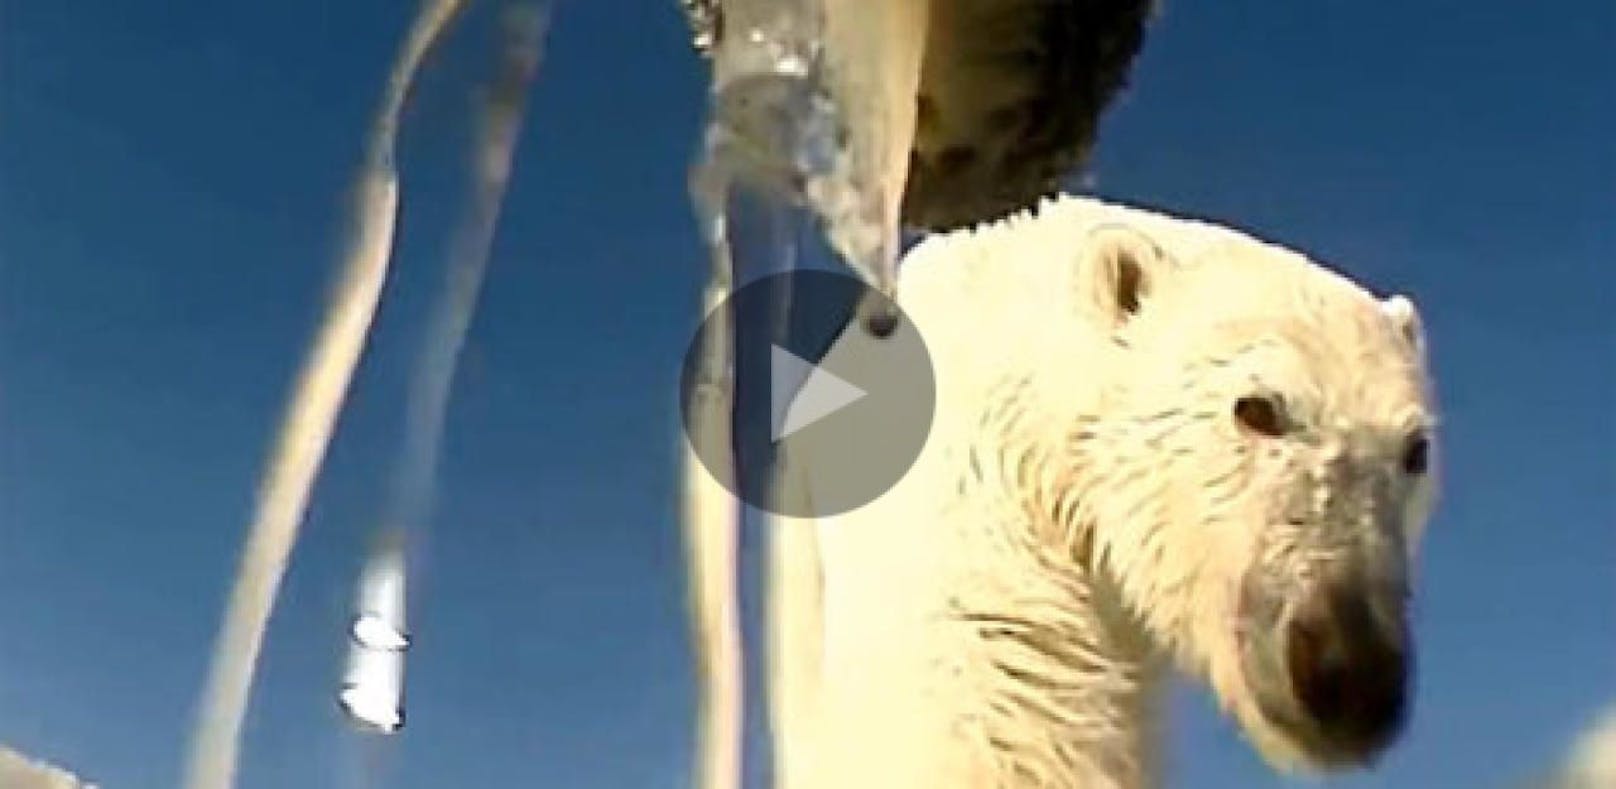 So sieht Verhungern aus Sicht der Eisbären aus